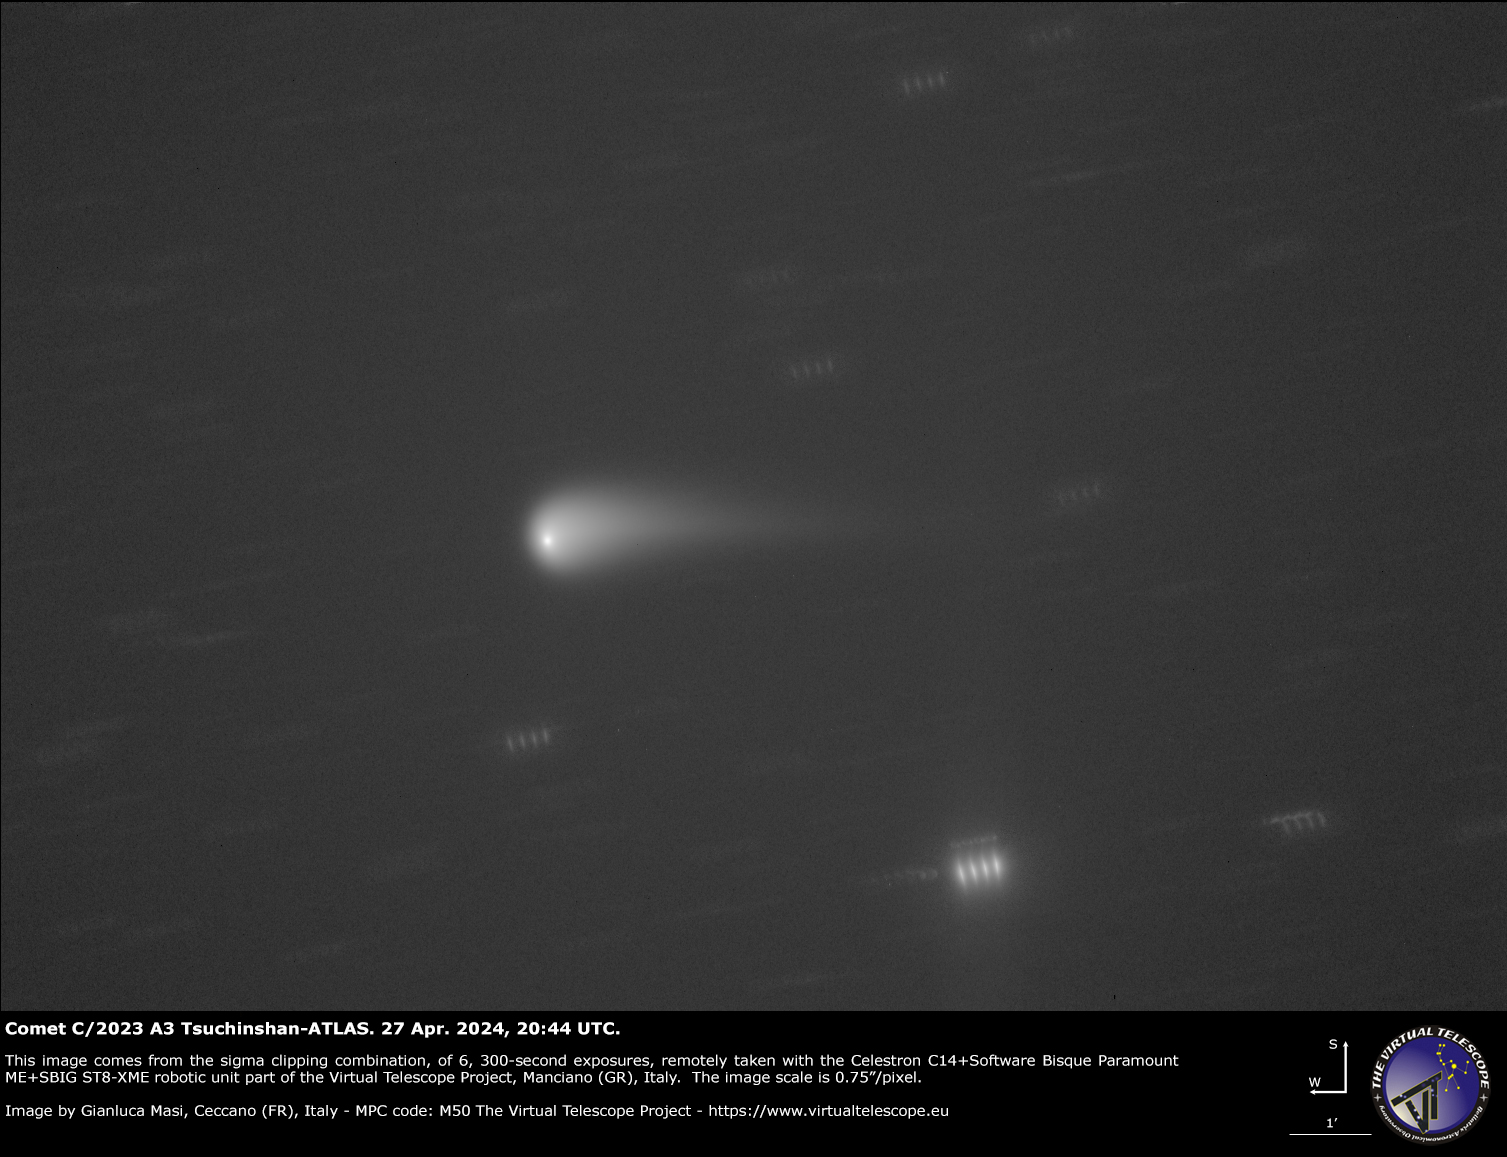 Cometa C/2023 A3 Tsuchinshan-ATLAS: una nueva imagen – 27 de abril de 2024.